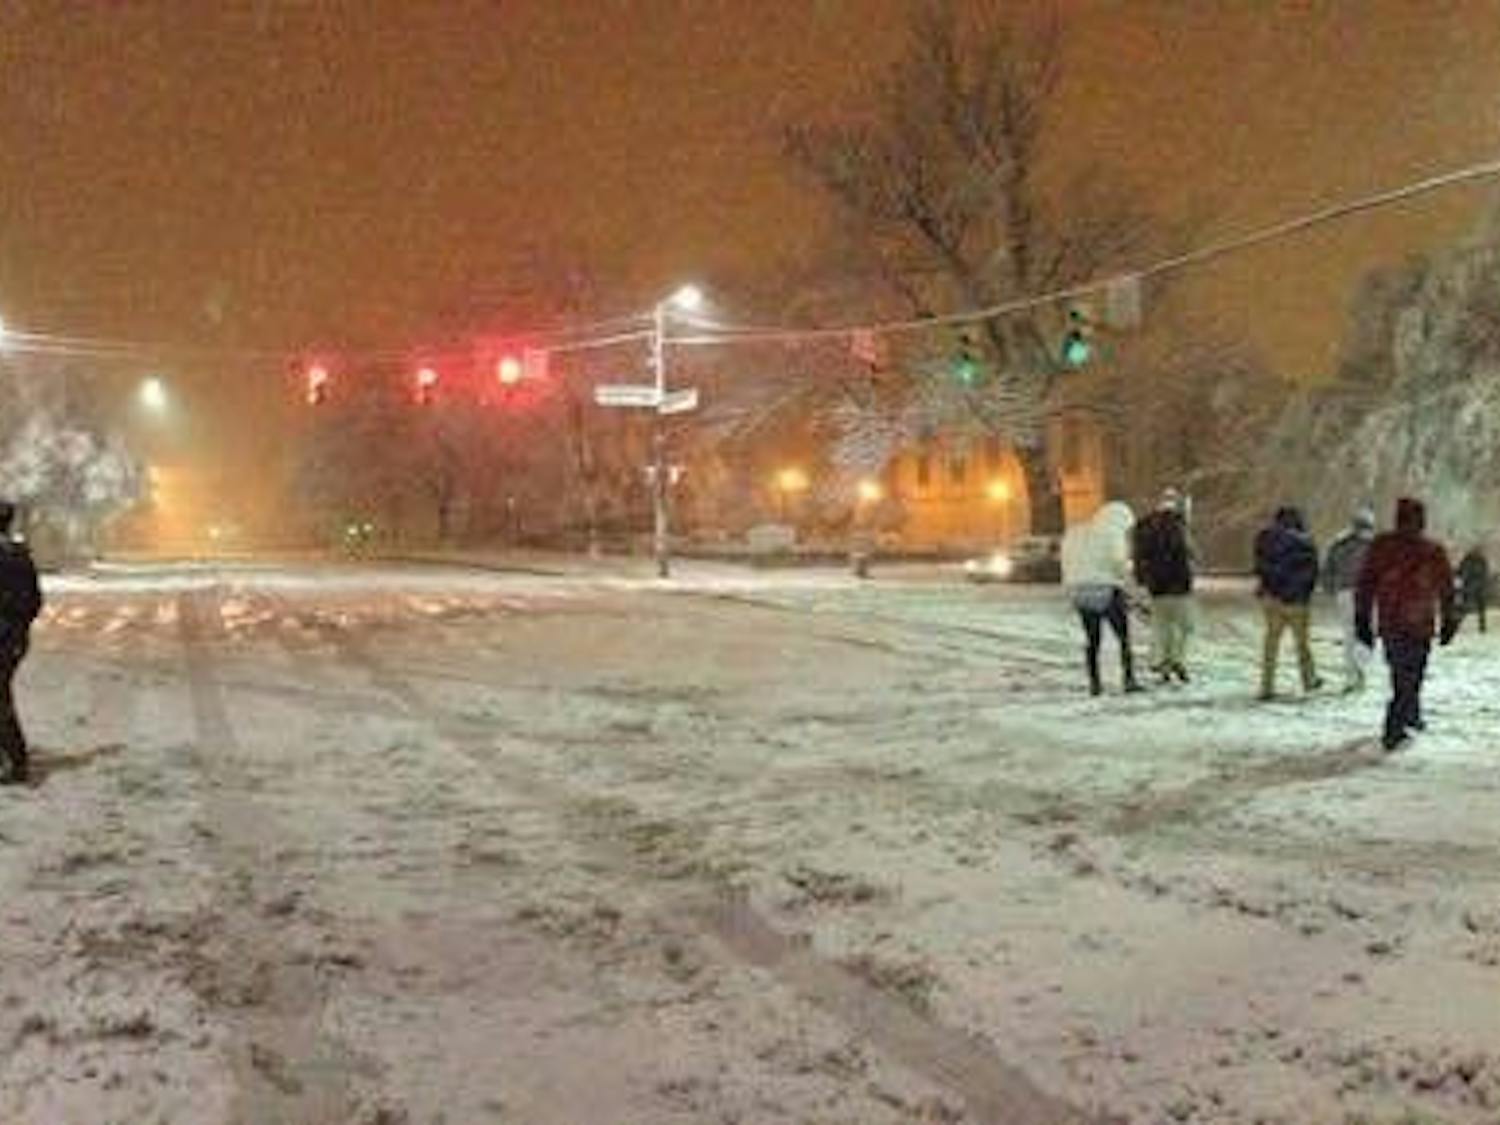 People walking on a snowy Franklin Street in Feb. 2015.